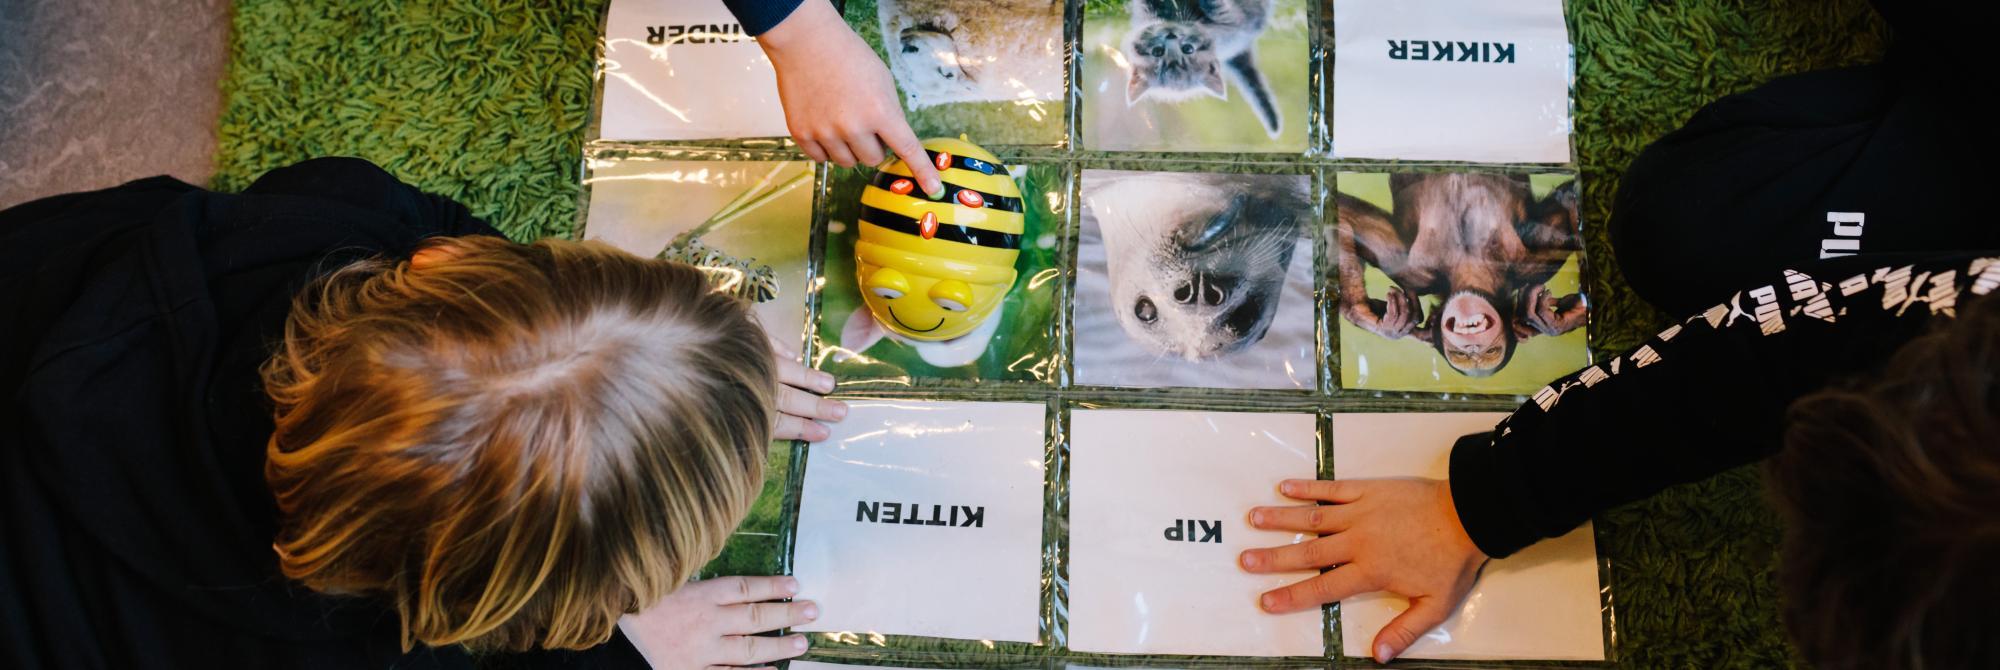 Kinderen werken samen aan opdracht met dierennamen - bovenaanzicht